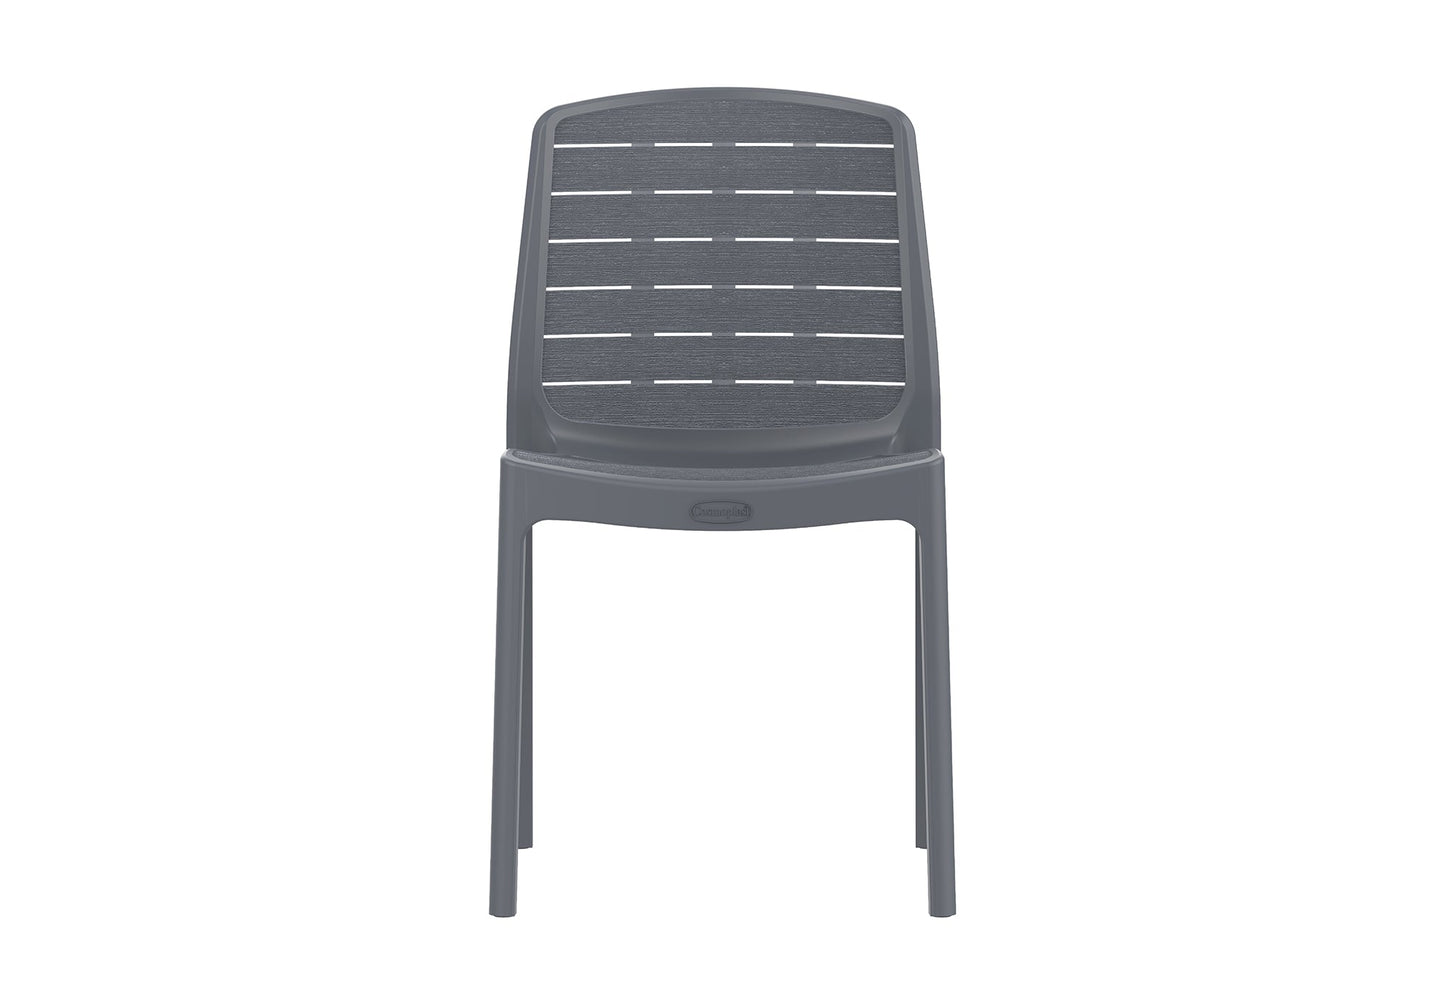  Armless Indoor outdoor Chair cosmoplast kuwait